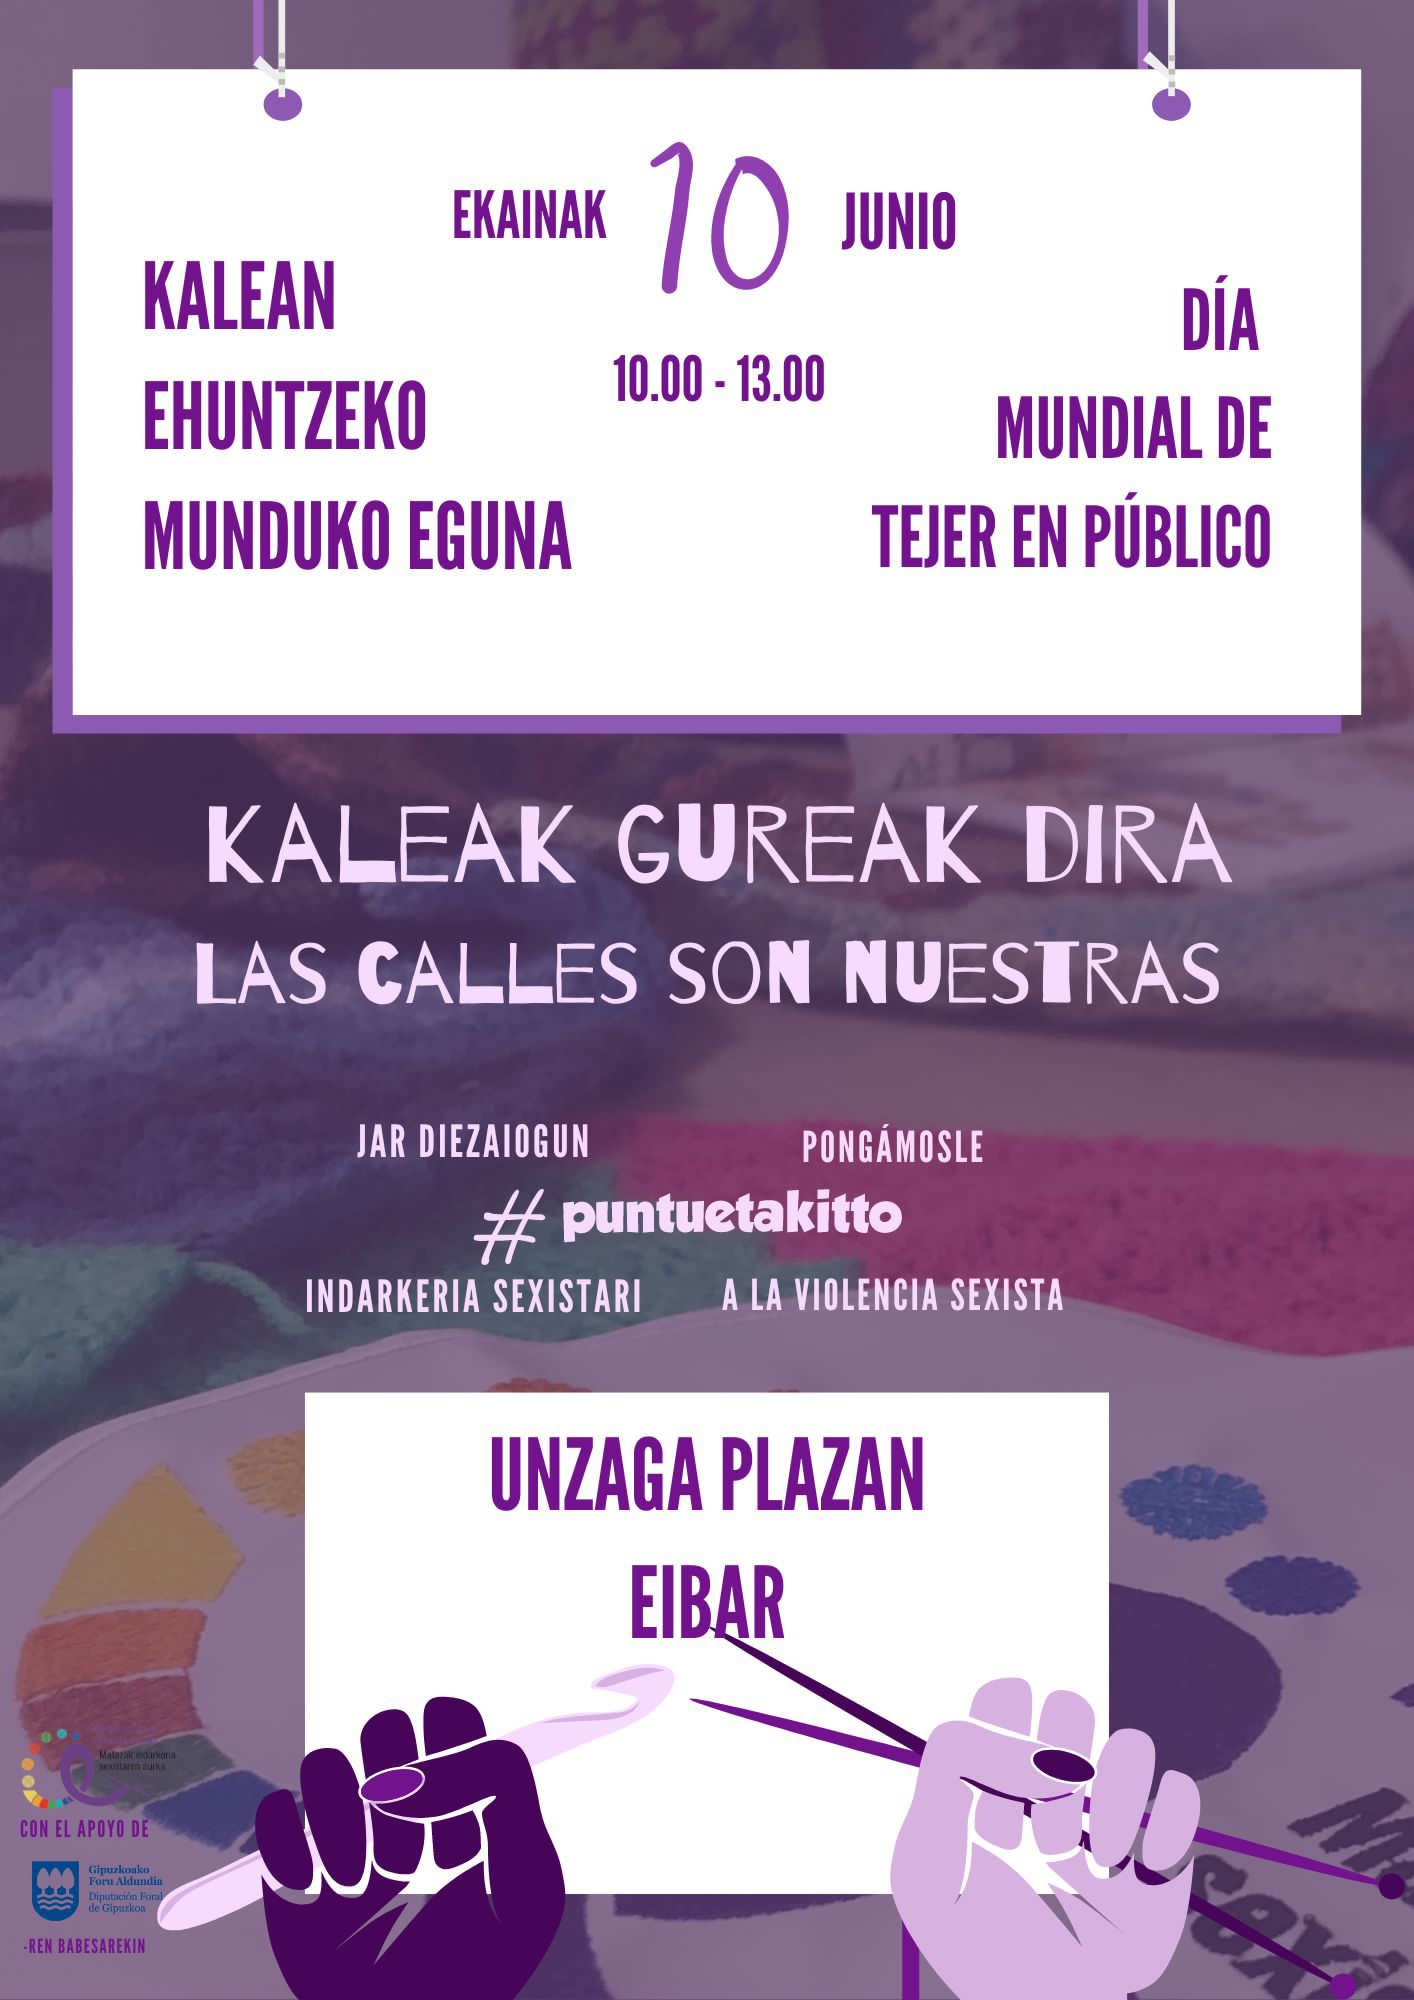 El 10 de junio se celebrará en Eibar el Día Mundial de Tejer en Público